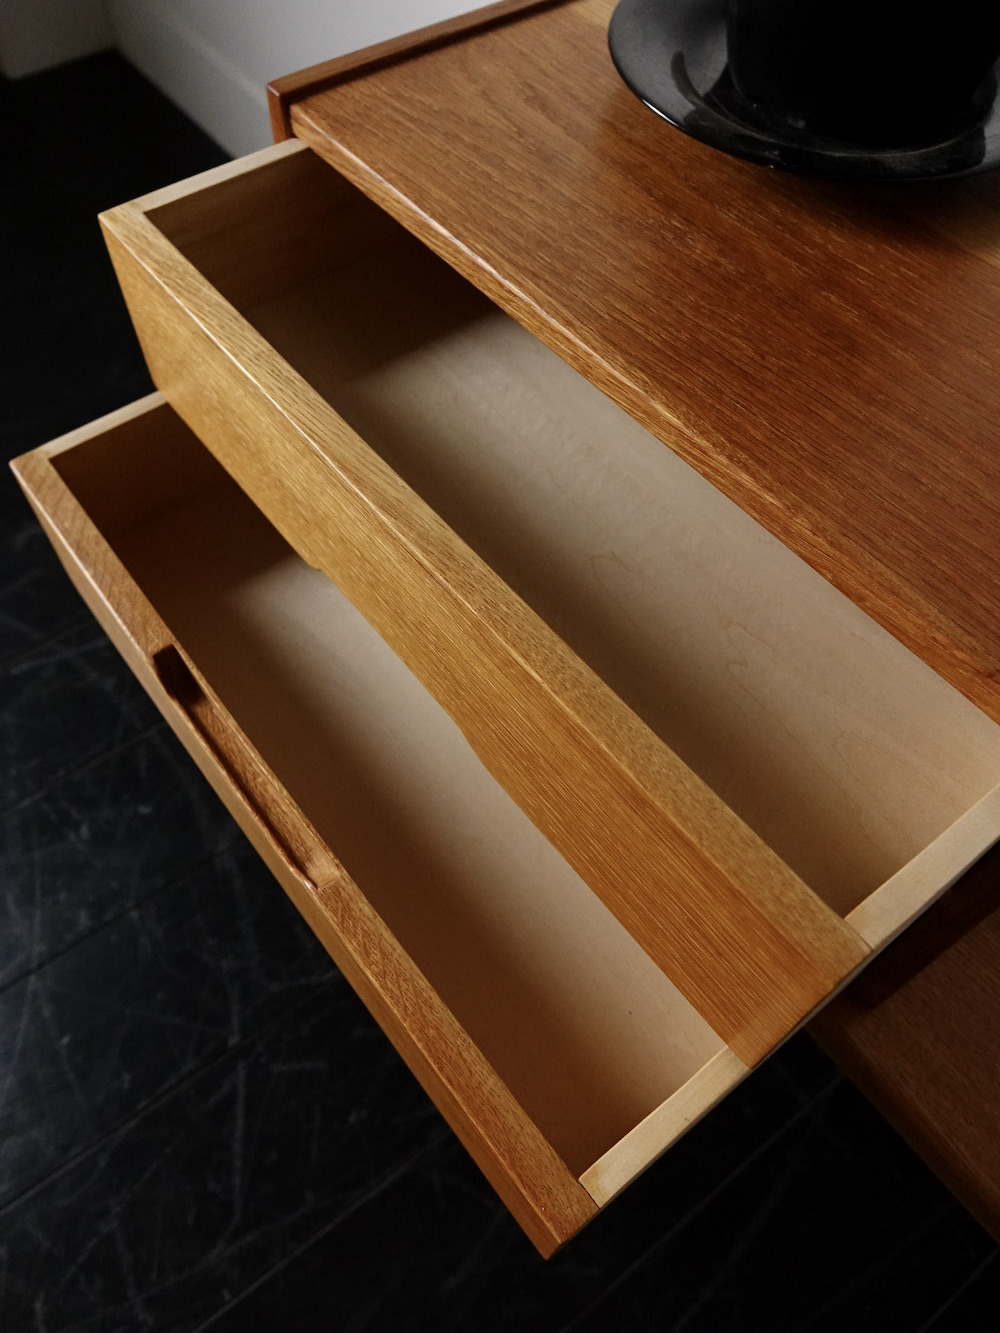 “Model.36” Enterance hall chest by Kai Kristiansen for Aksel Kjaersgaard